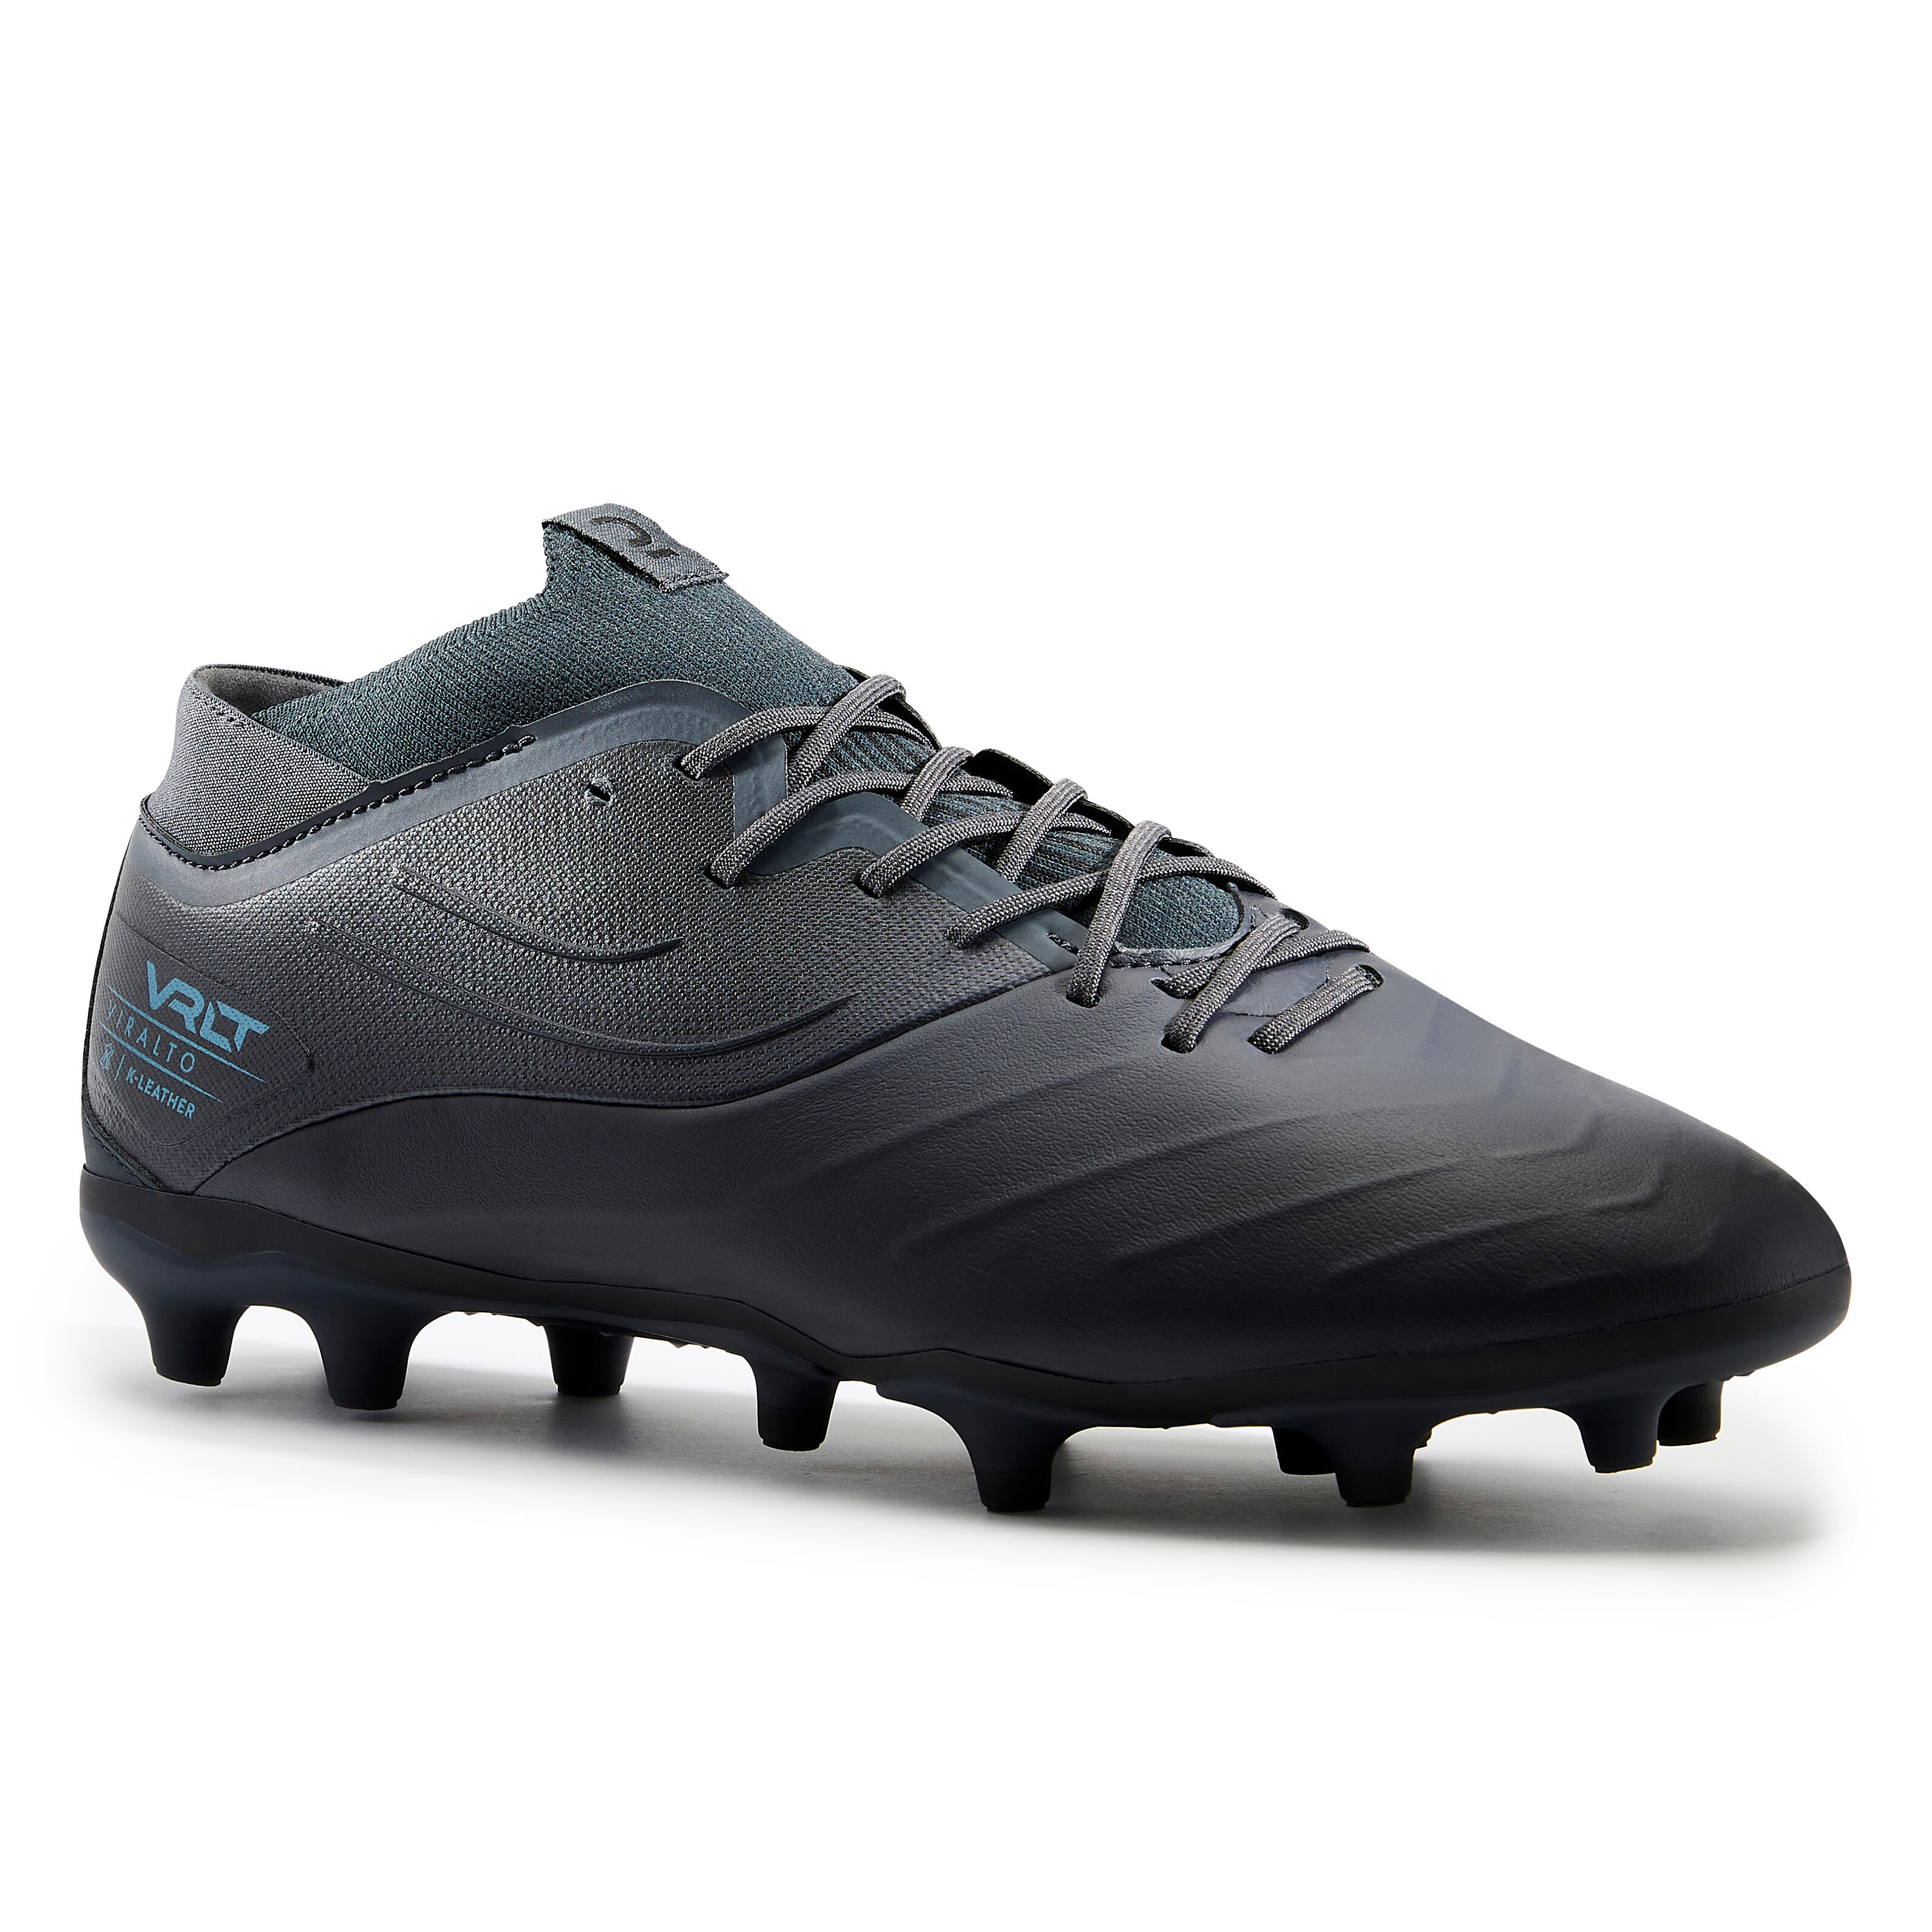 TAZAN High Top Sneakers 2019 degli uomini professionali di calcio Scarpe da calcio allaperto atletici scarpe da ginnastica scarpe da calcio in bianco e nero Turf scarpe con borchie 35-45EU 